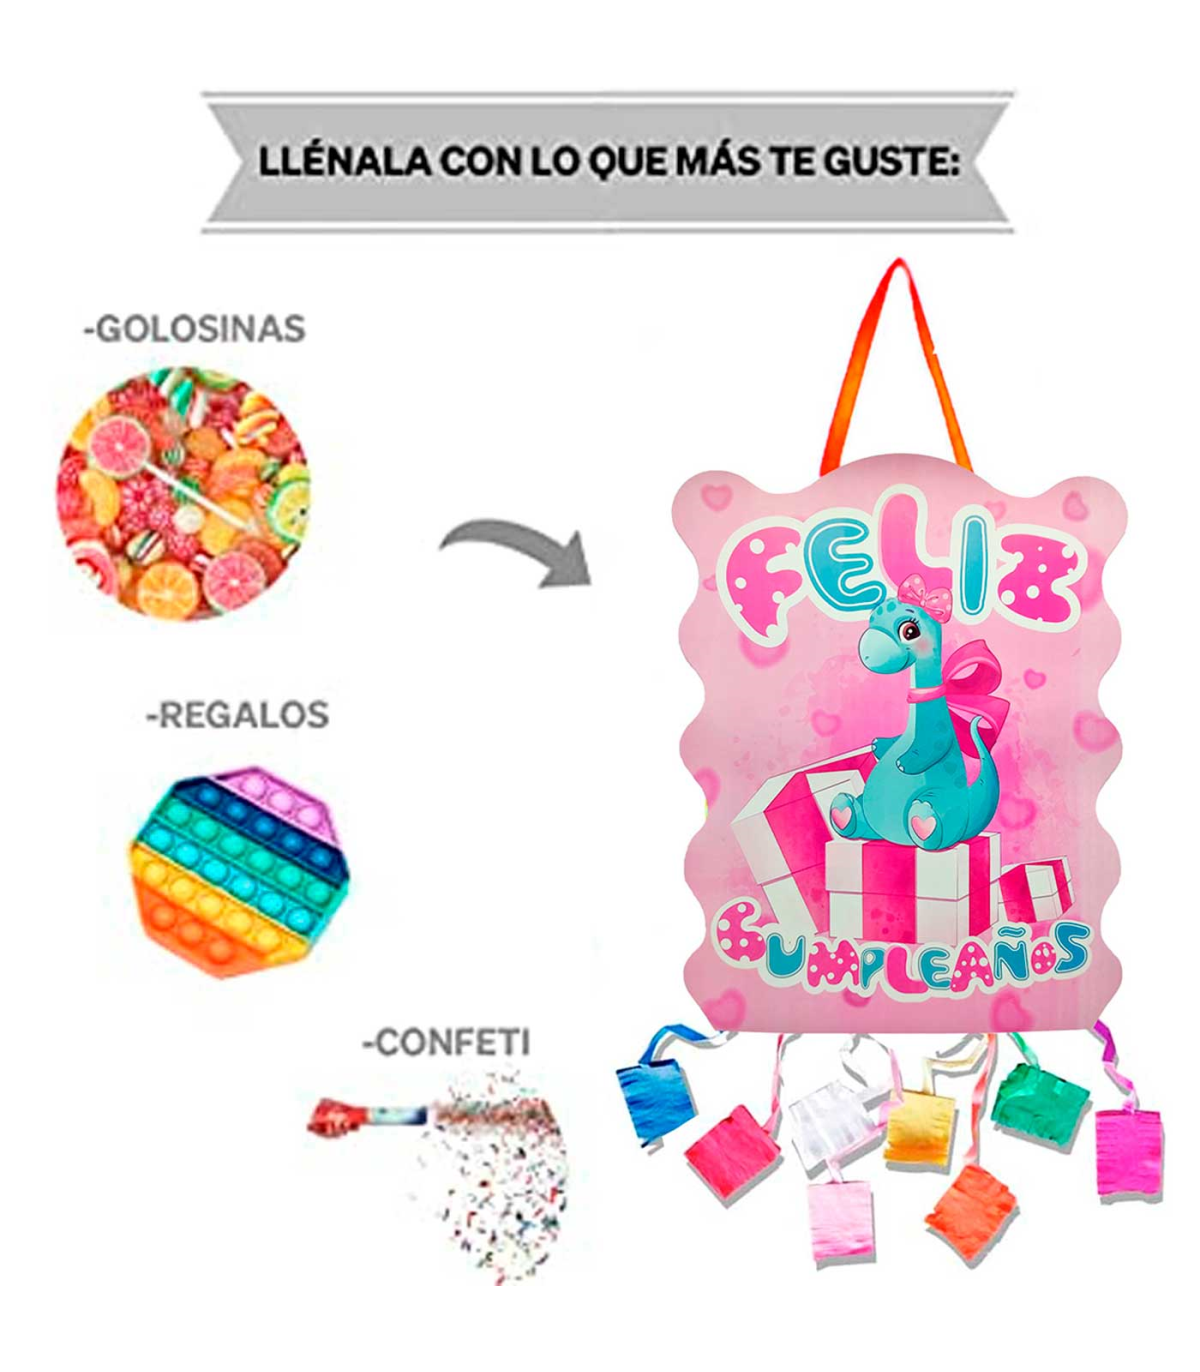 Cómo rellenar una piñata infantil? - Blog de Chuches